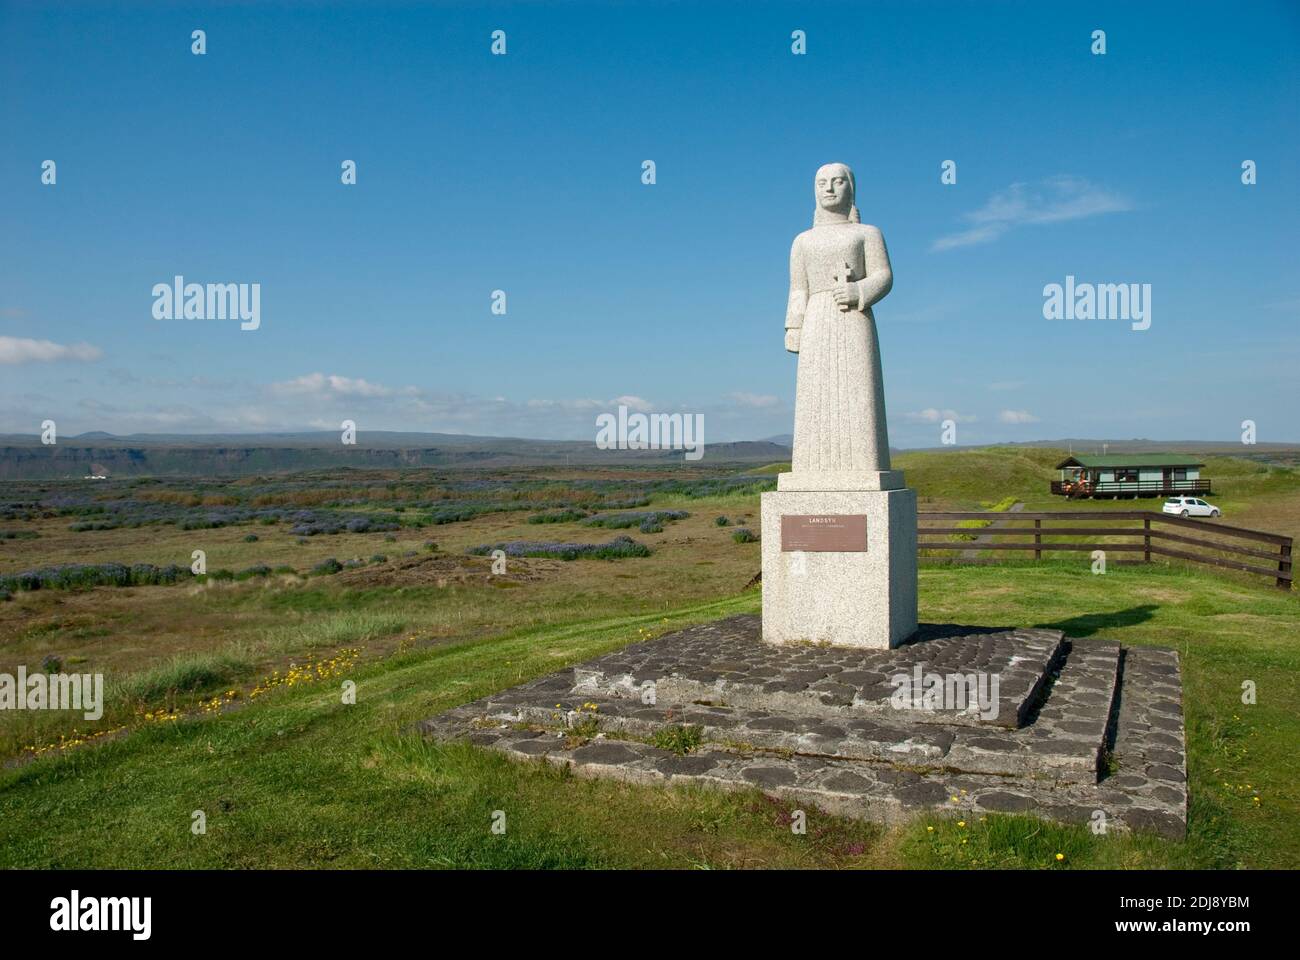 Europa, Island, Iceland, Reykjanes Halbinsel, Statue, Landsyn, Lichtengel Stock Photo